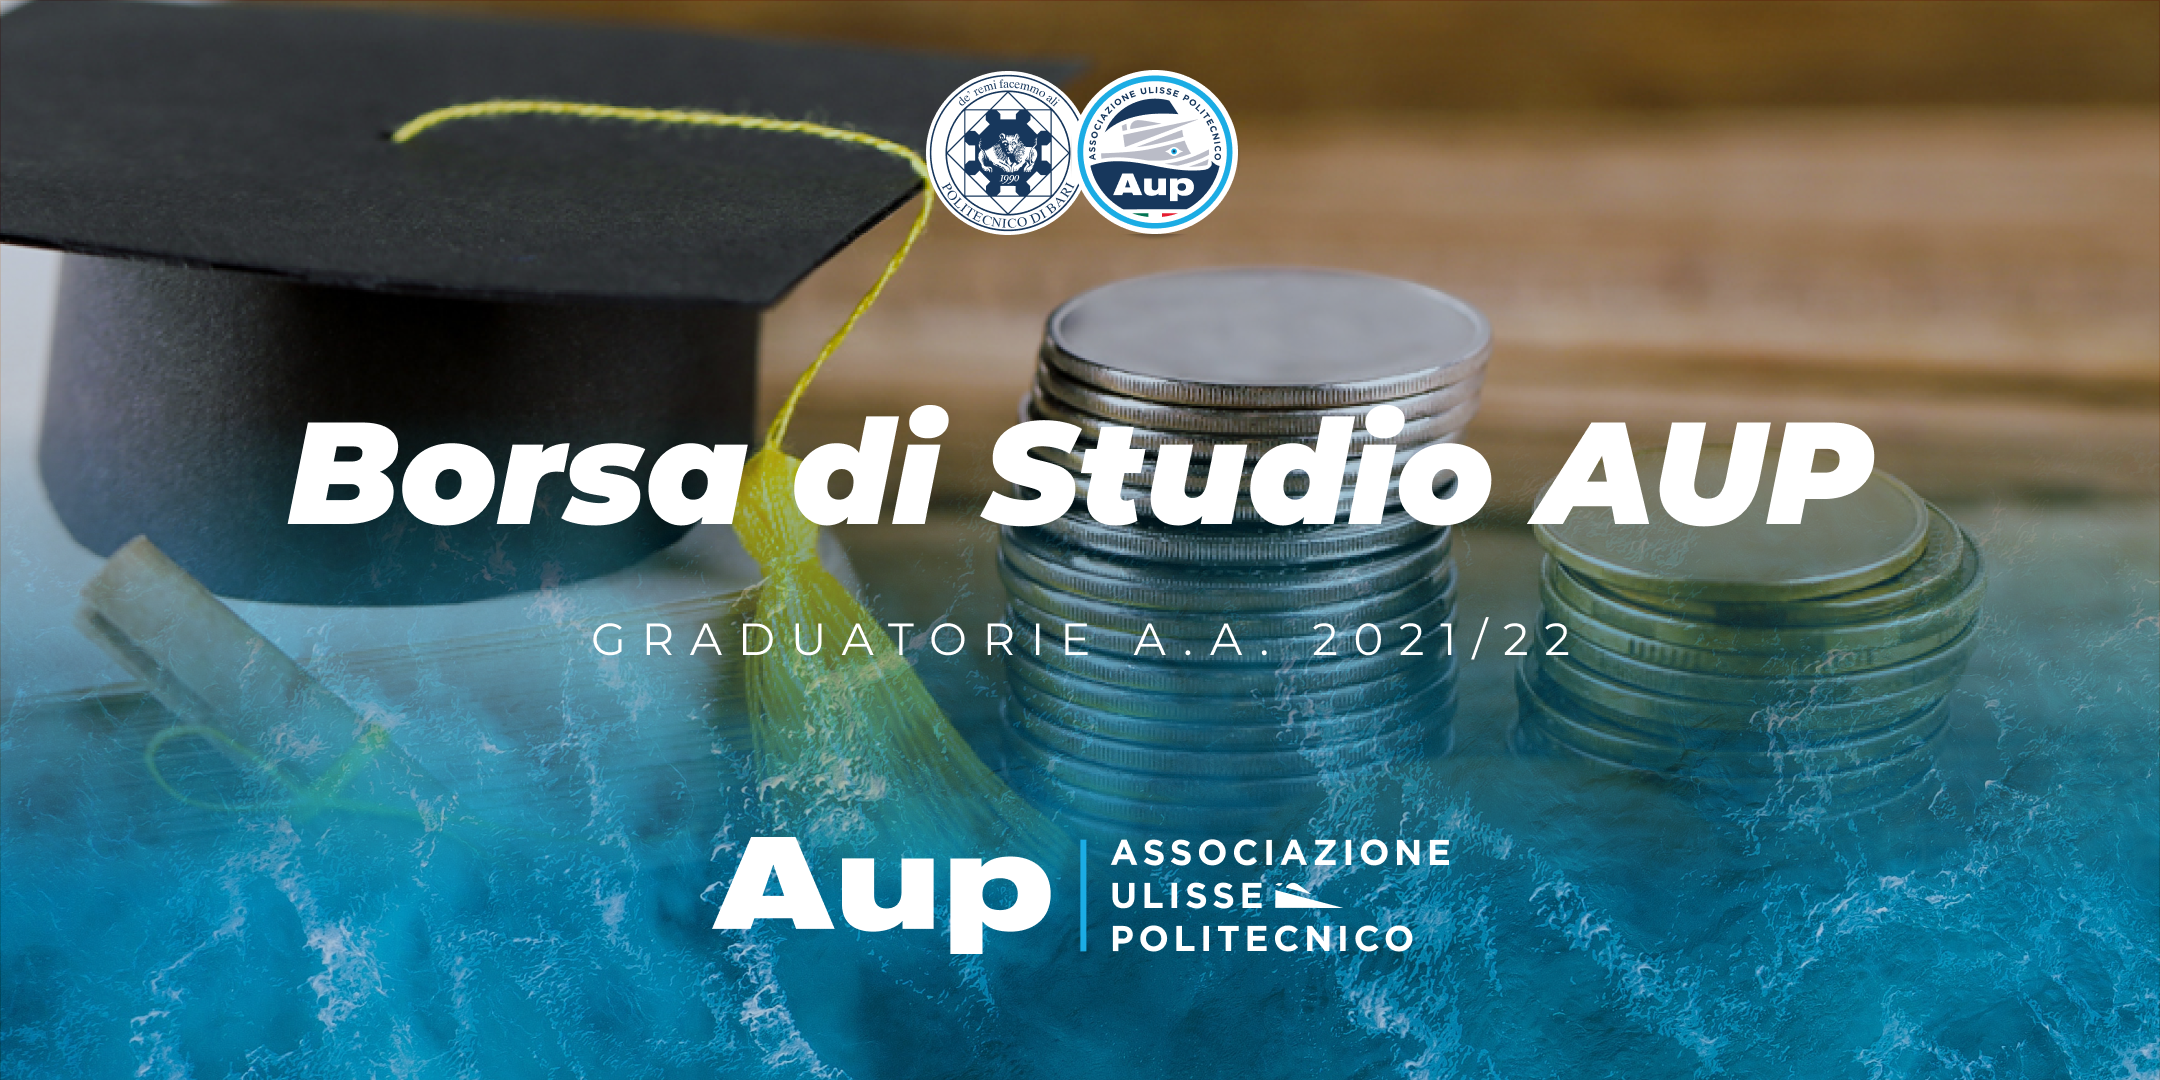 Graduatorie Borsa di Studio per merito AUP - a.a. 2021/22